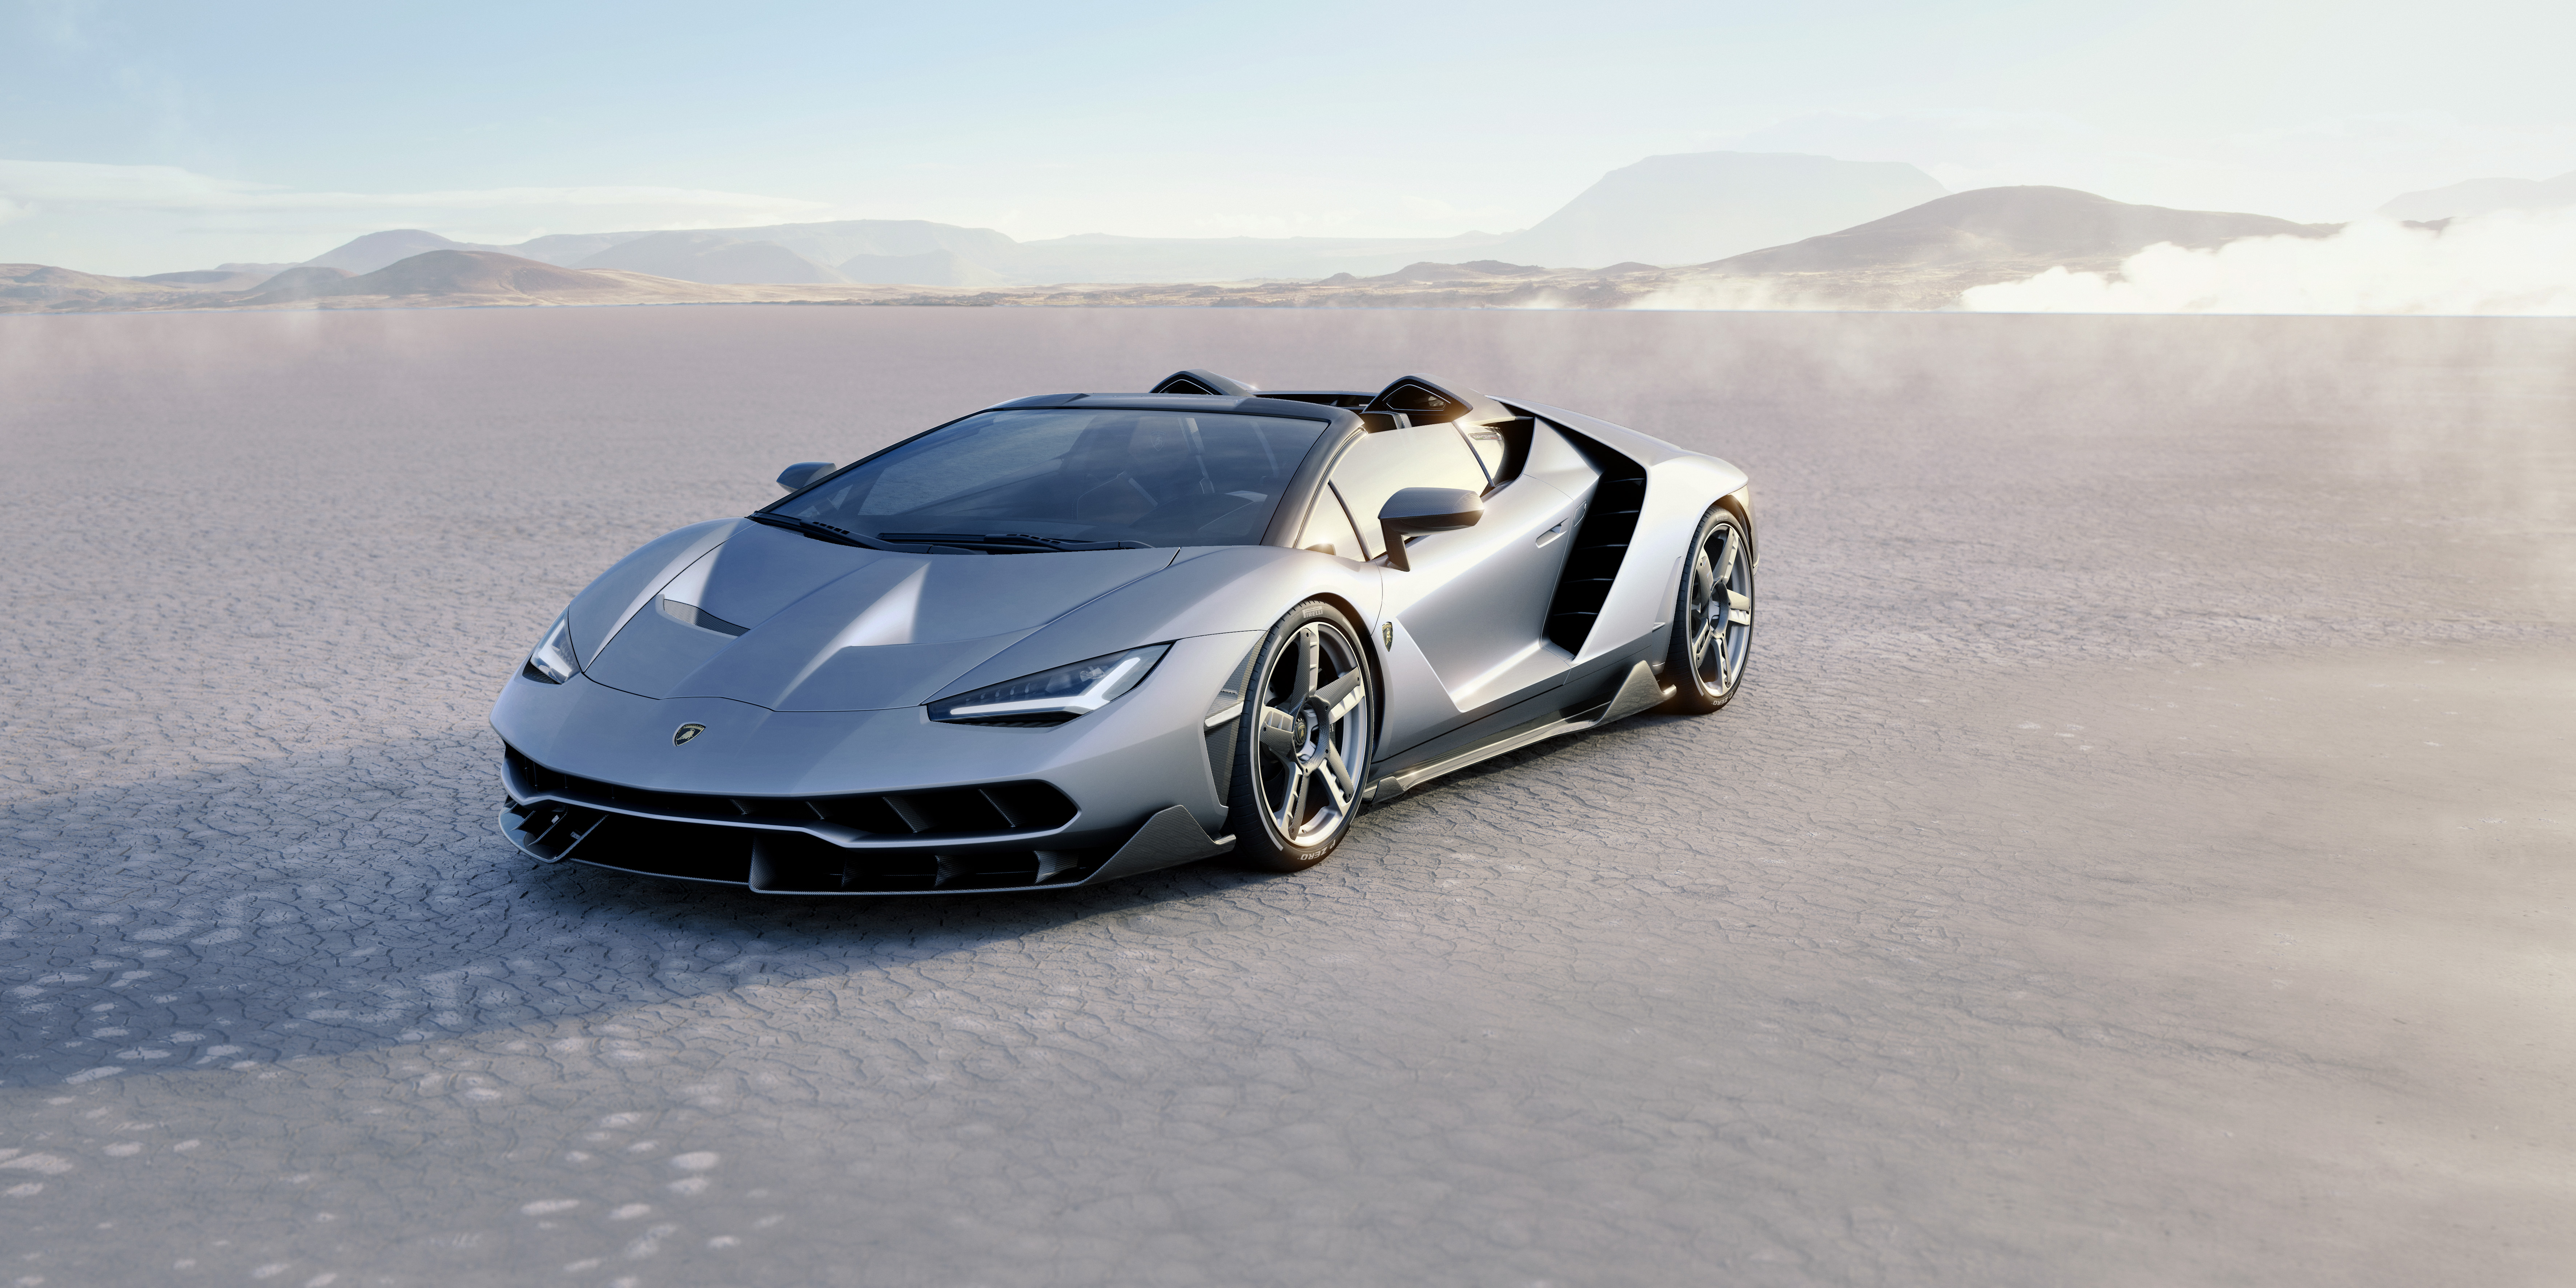 8K Lamborghini Centenario Roadster, HD Cars, 4k Wallpapers, Images